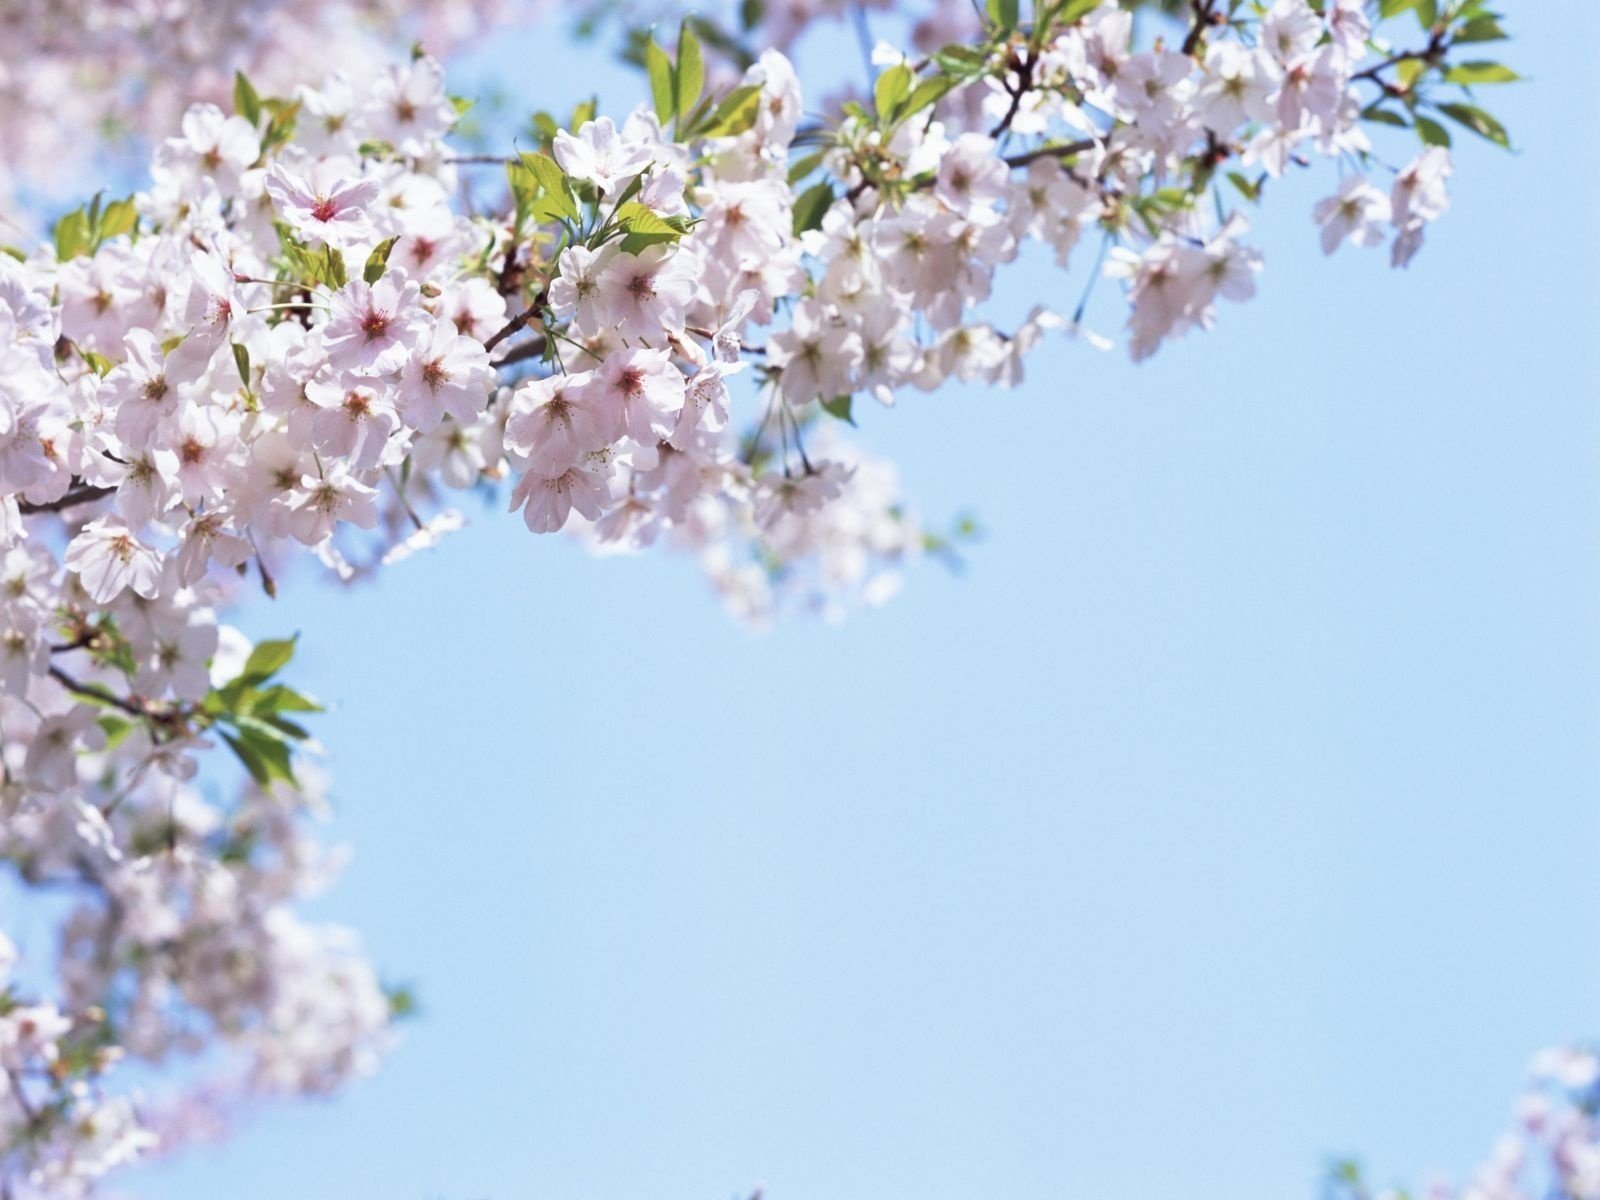 ветка в цвету весенние запахи цветы размытость фокус голубое небо небо весна